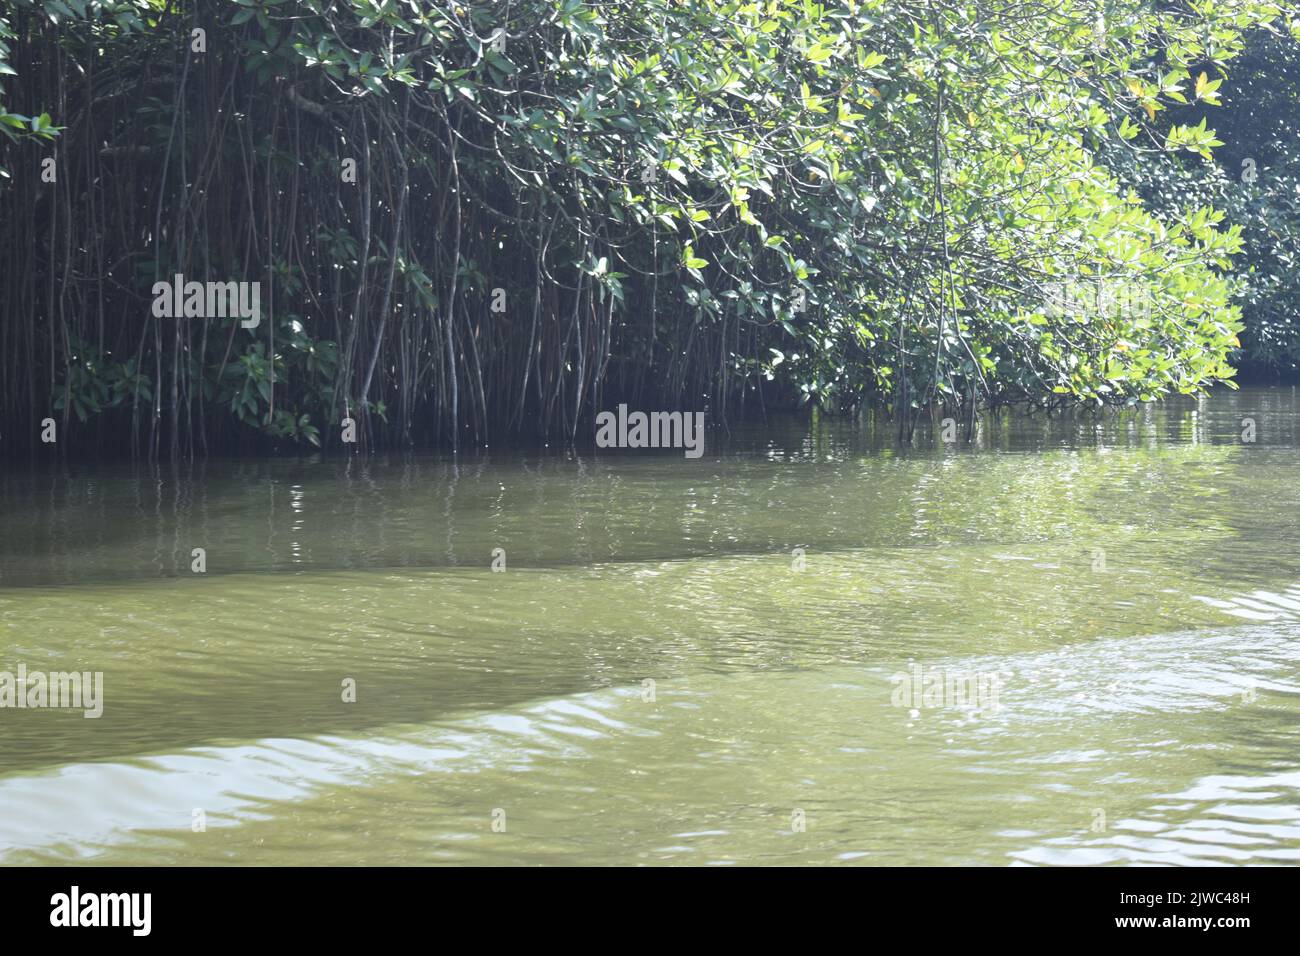 Forêt de Mangroove. Le safari de la rivière Madu est une activité populaire qui doit être sur la liste de faire de tout respectable goer sri lankais de vacances. Cette activité inoubliable dure plus de deux heures et donne à un visiteur l'occasion de parcourir les passages secrets à travers les forêts de mangrove et de voir l'écologie. Madu Ganga est un cours d'eau mineur qui provient près d'Uragasmanhandiya dans le district de Galle au Sri Lanka, avant de s'élargir dans le lac de Madu Ganga à Balapitiya. La rivière coule ensuite sur 4,4 km avant de s'écouler dans l'océan Indien. Il est situé à 88 km au sud de Colombo et à 35 km de NOR Banque D'Images